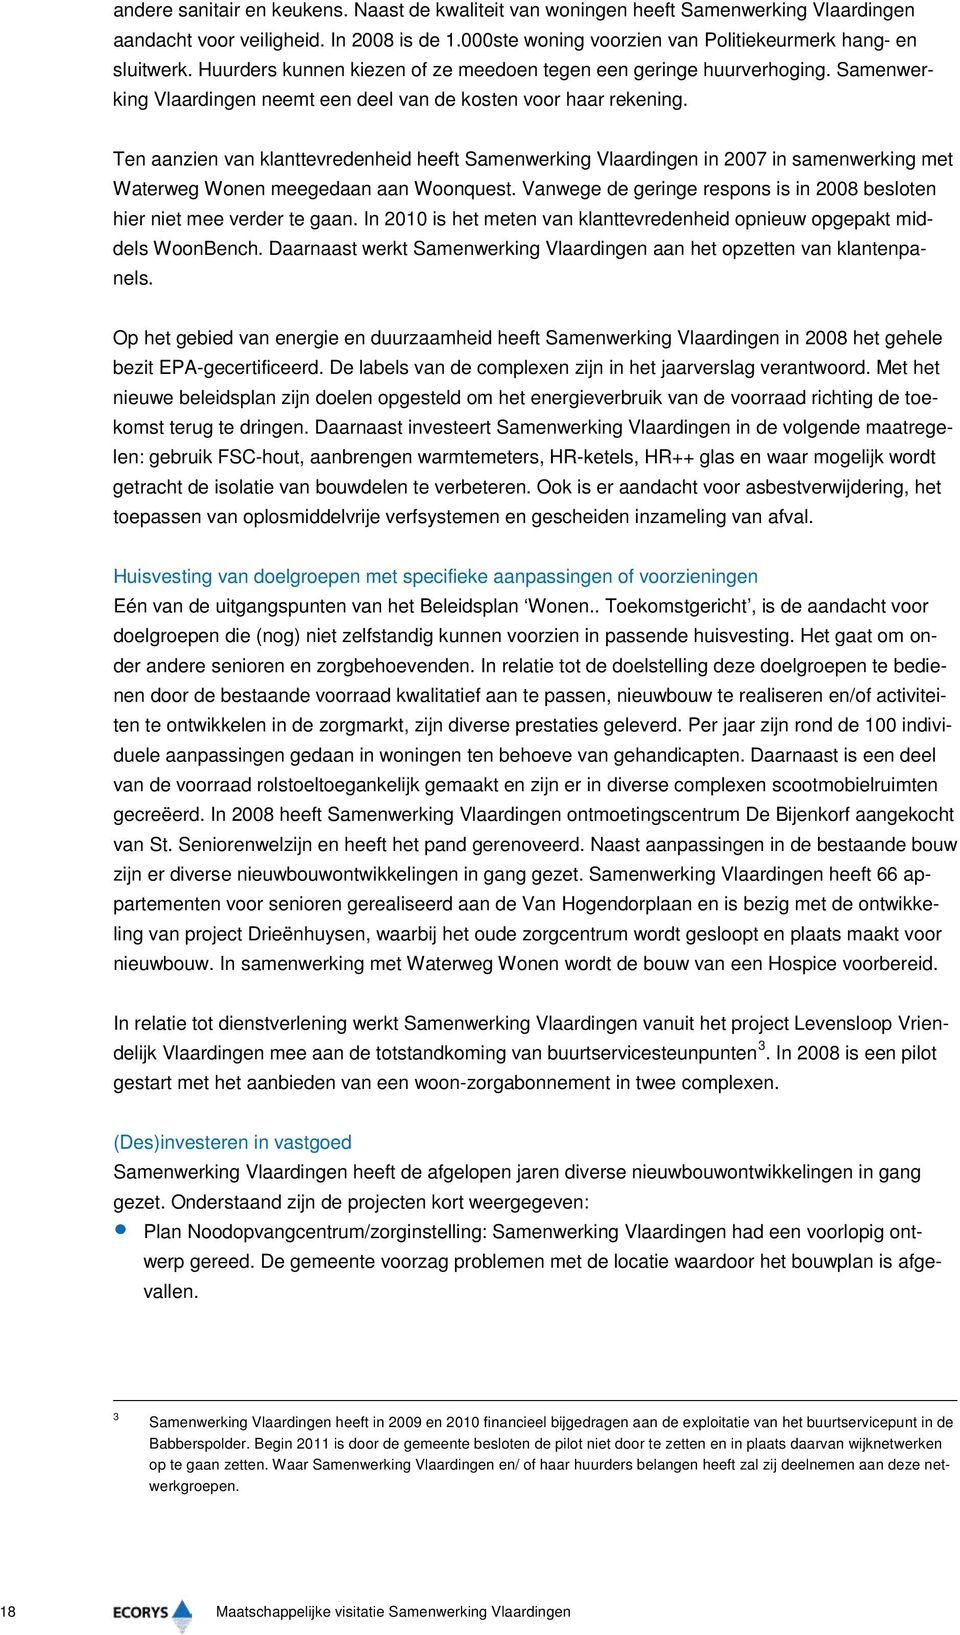 Ten aanzien van klanttevredenheid heeft Samenwerking Vlaardingen in 2007 in samenwerking met Waterweg Wonen meegedaan aan Woonquest.